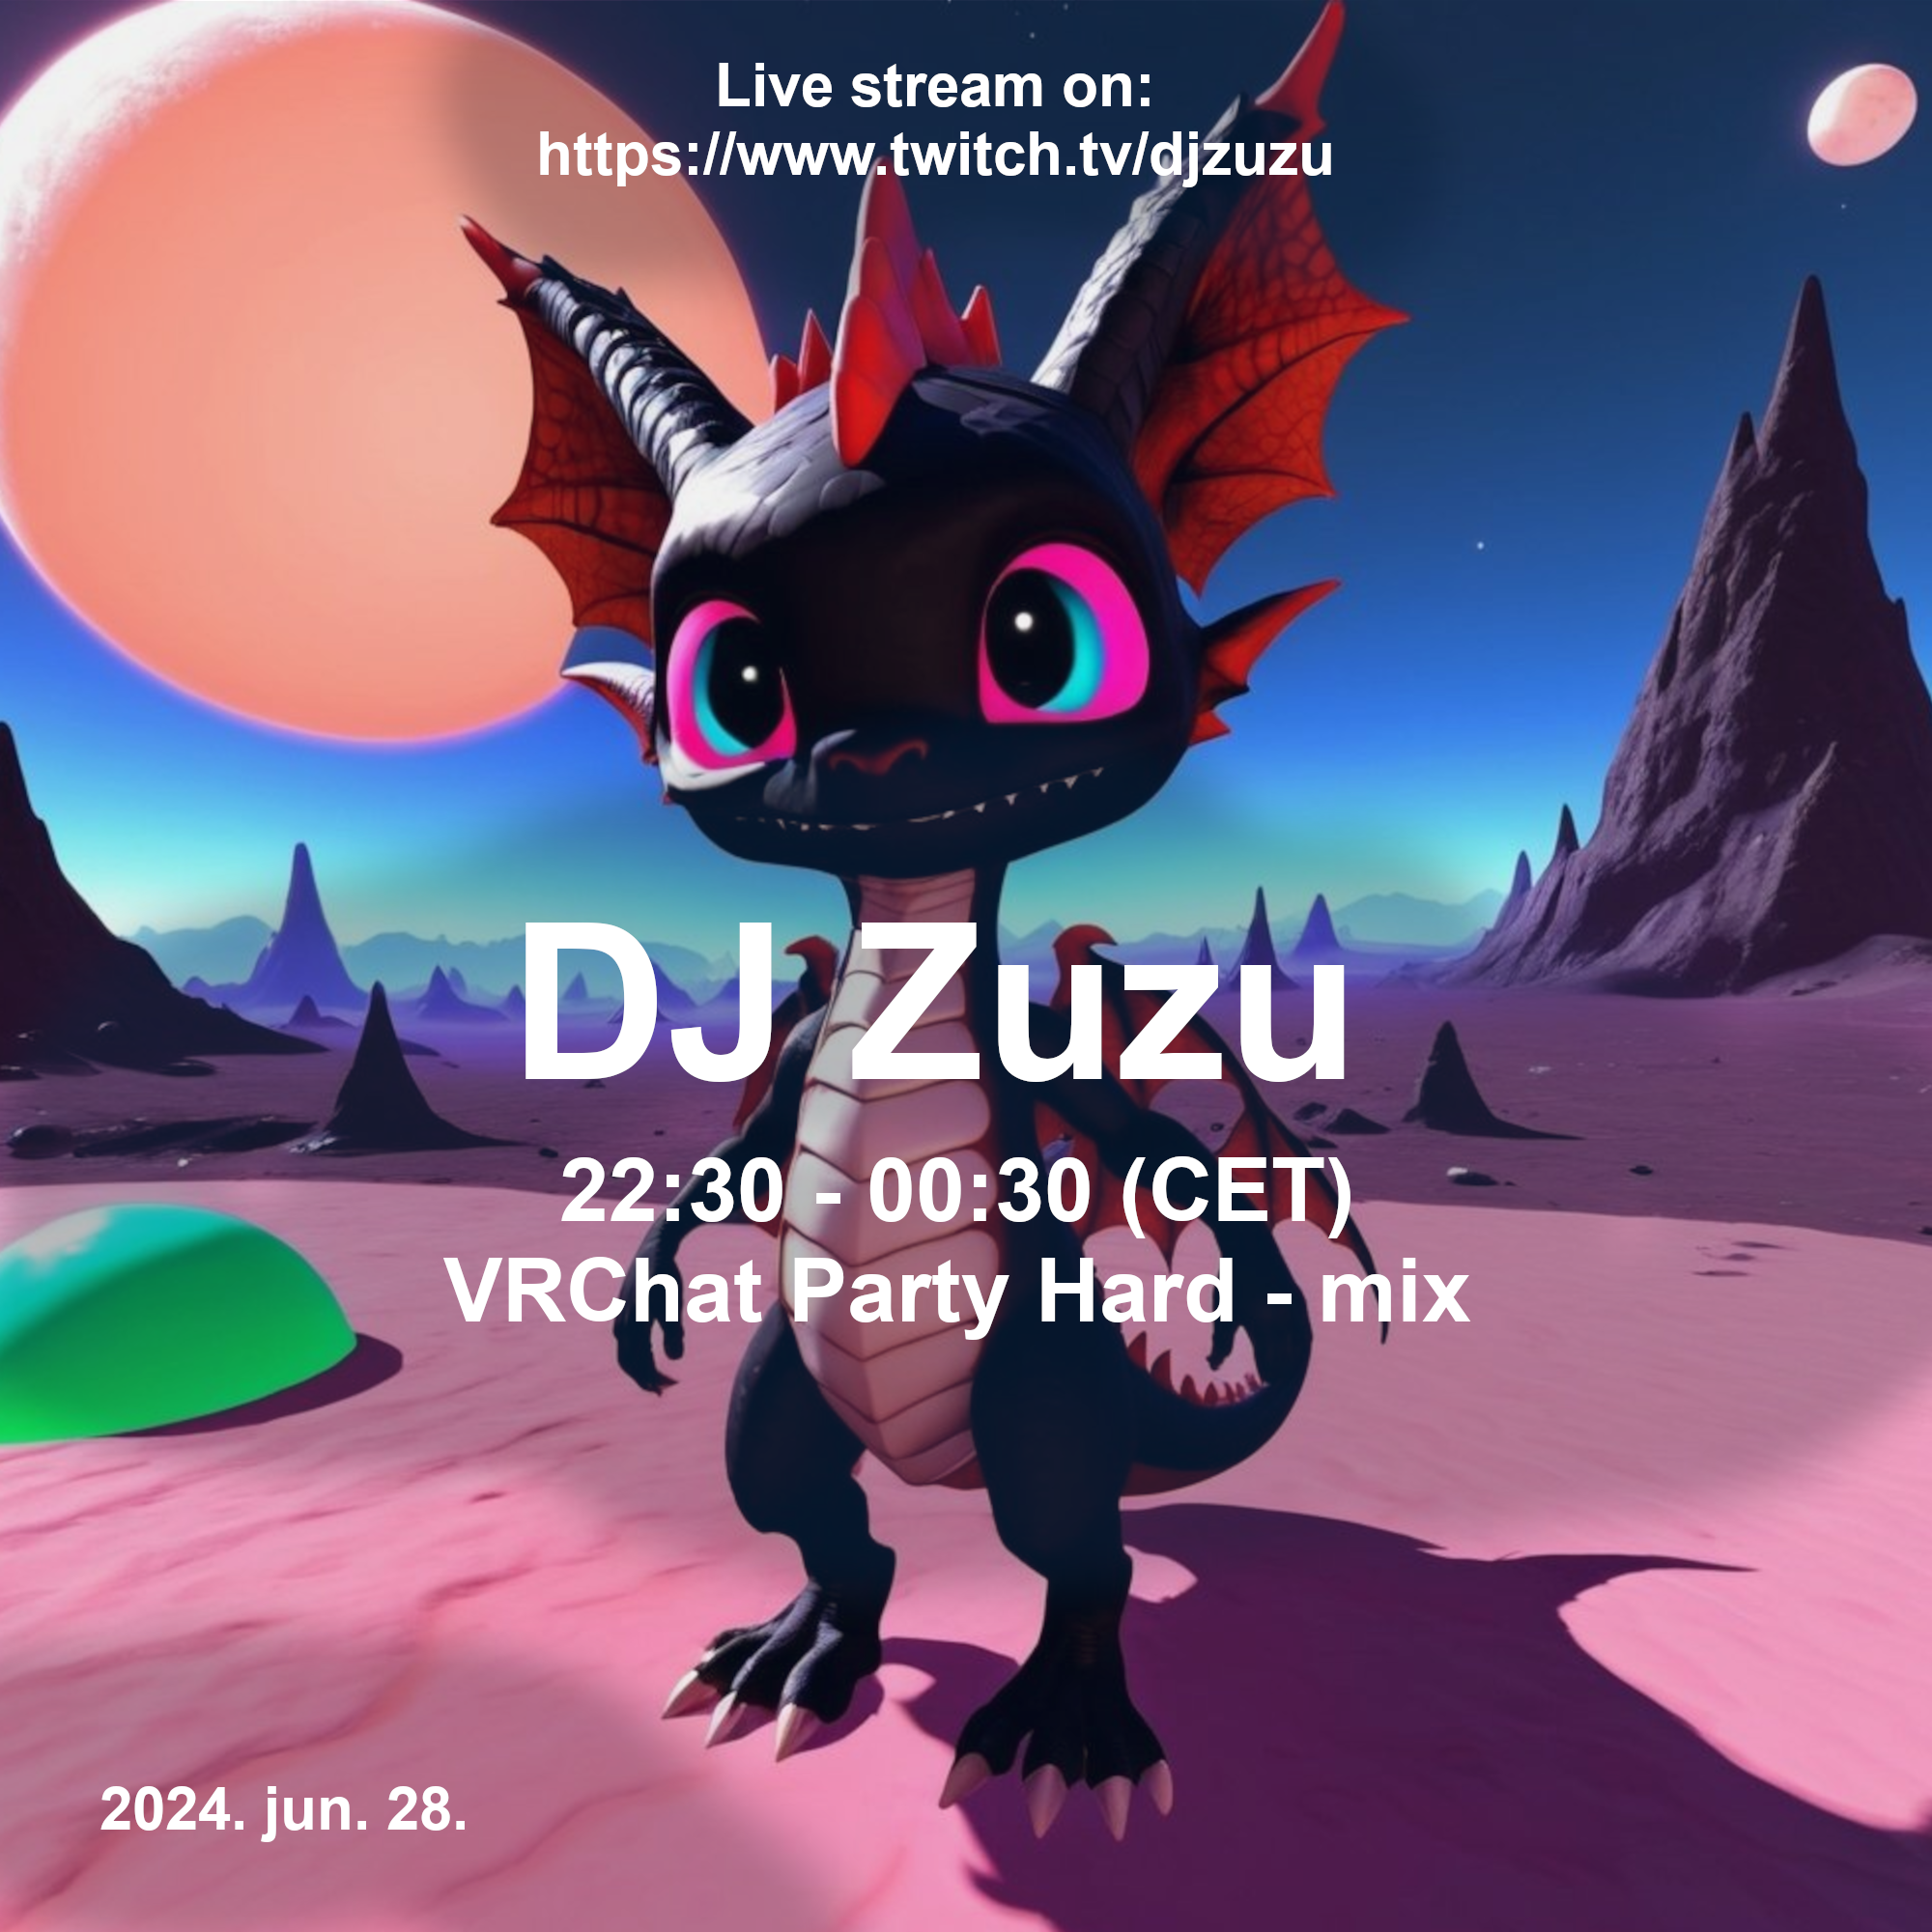 Dj Zuzu VRChat Party Hard event flyer 20240628